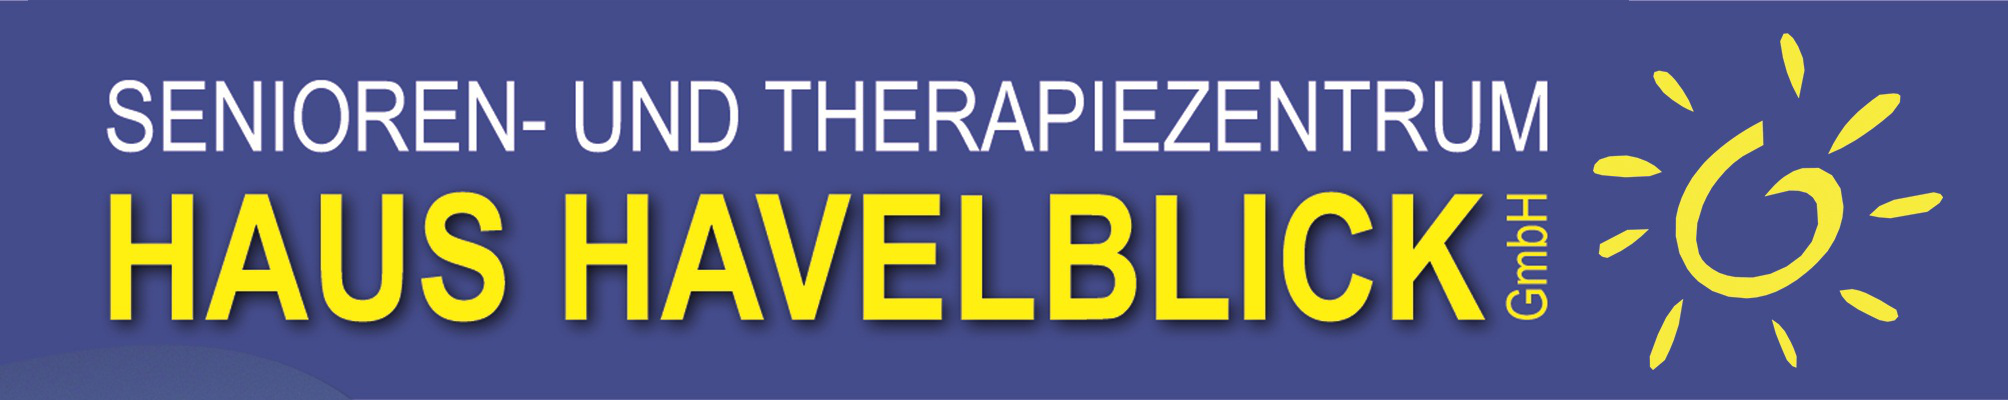 Logo Senioren- und Therapiezentrum Haus Havelblilck